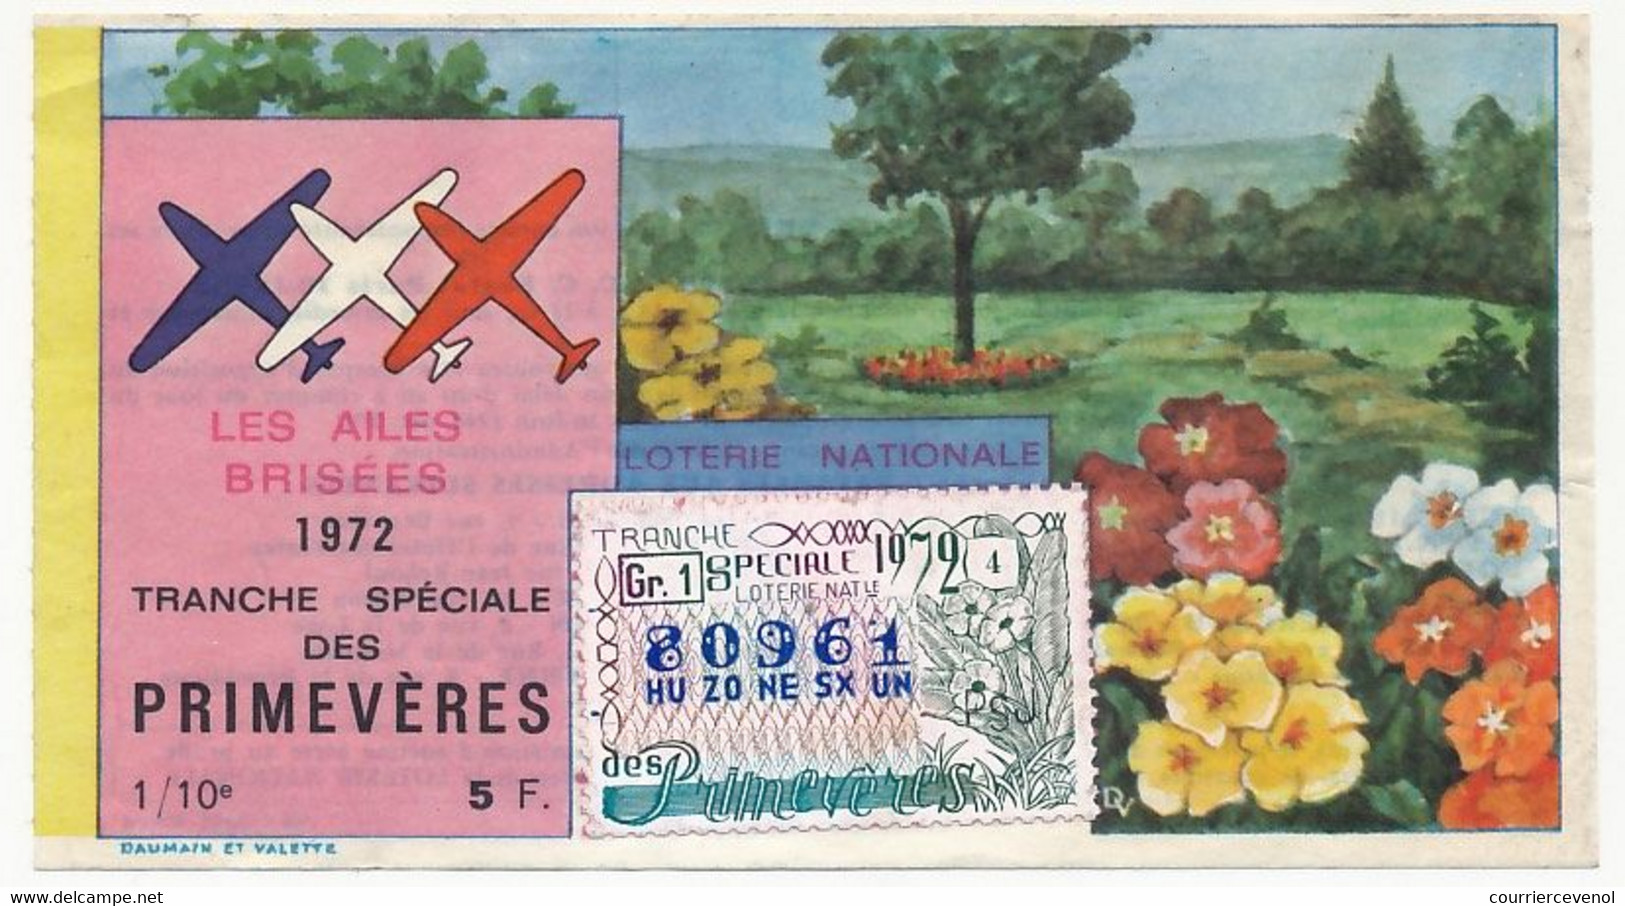 FRANCE - Loterie Nationale - 1/10ème - Les Ailes Brisées - Tranche Spéciale Des Primevères - 1972 - Loterijbiljetten